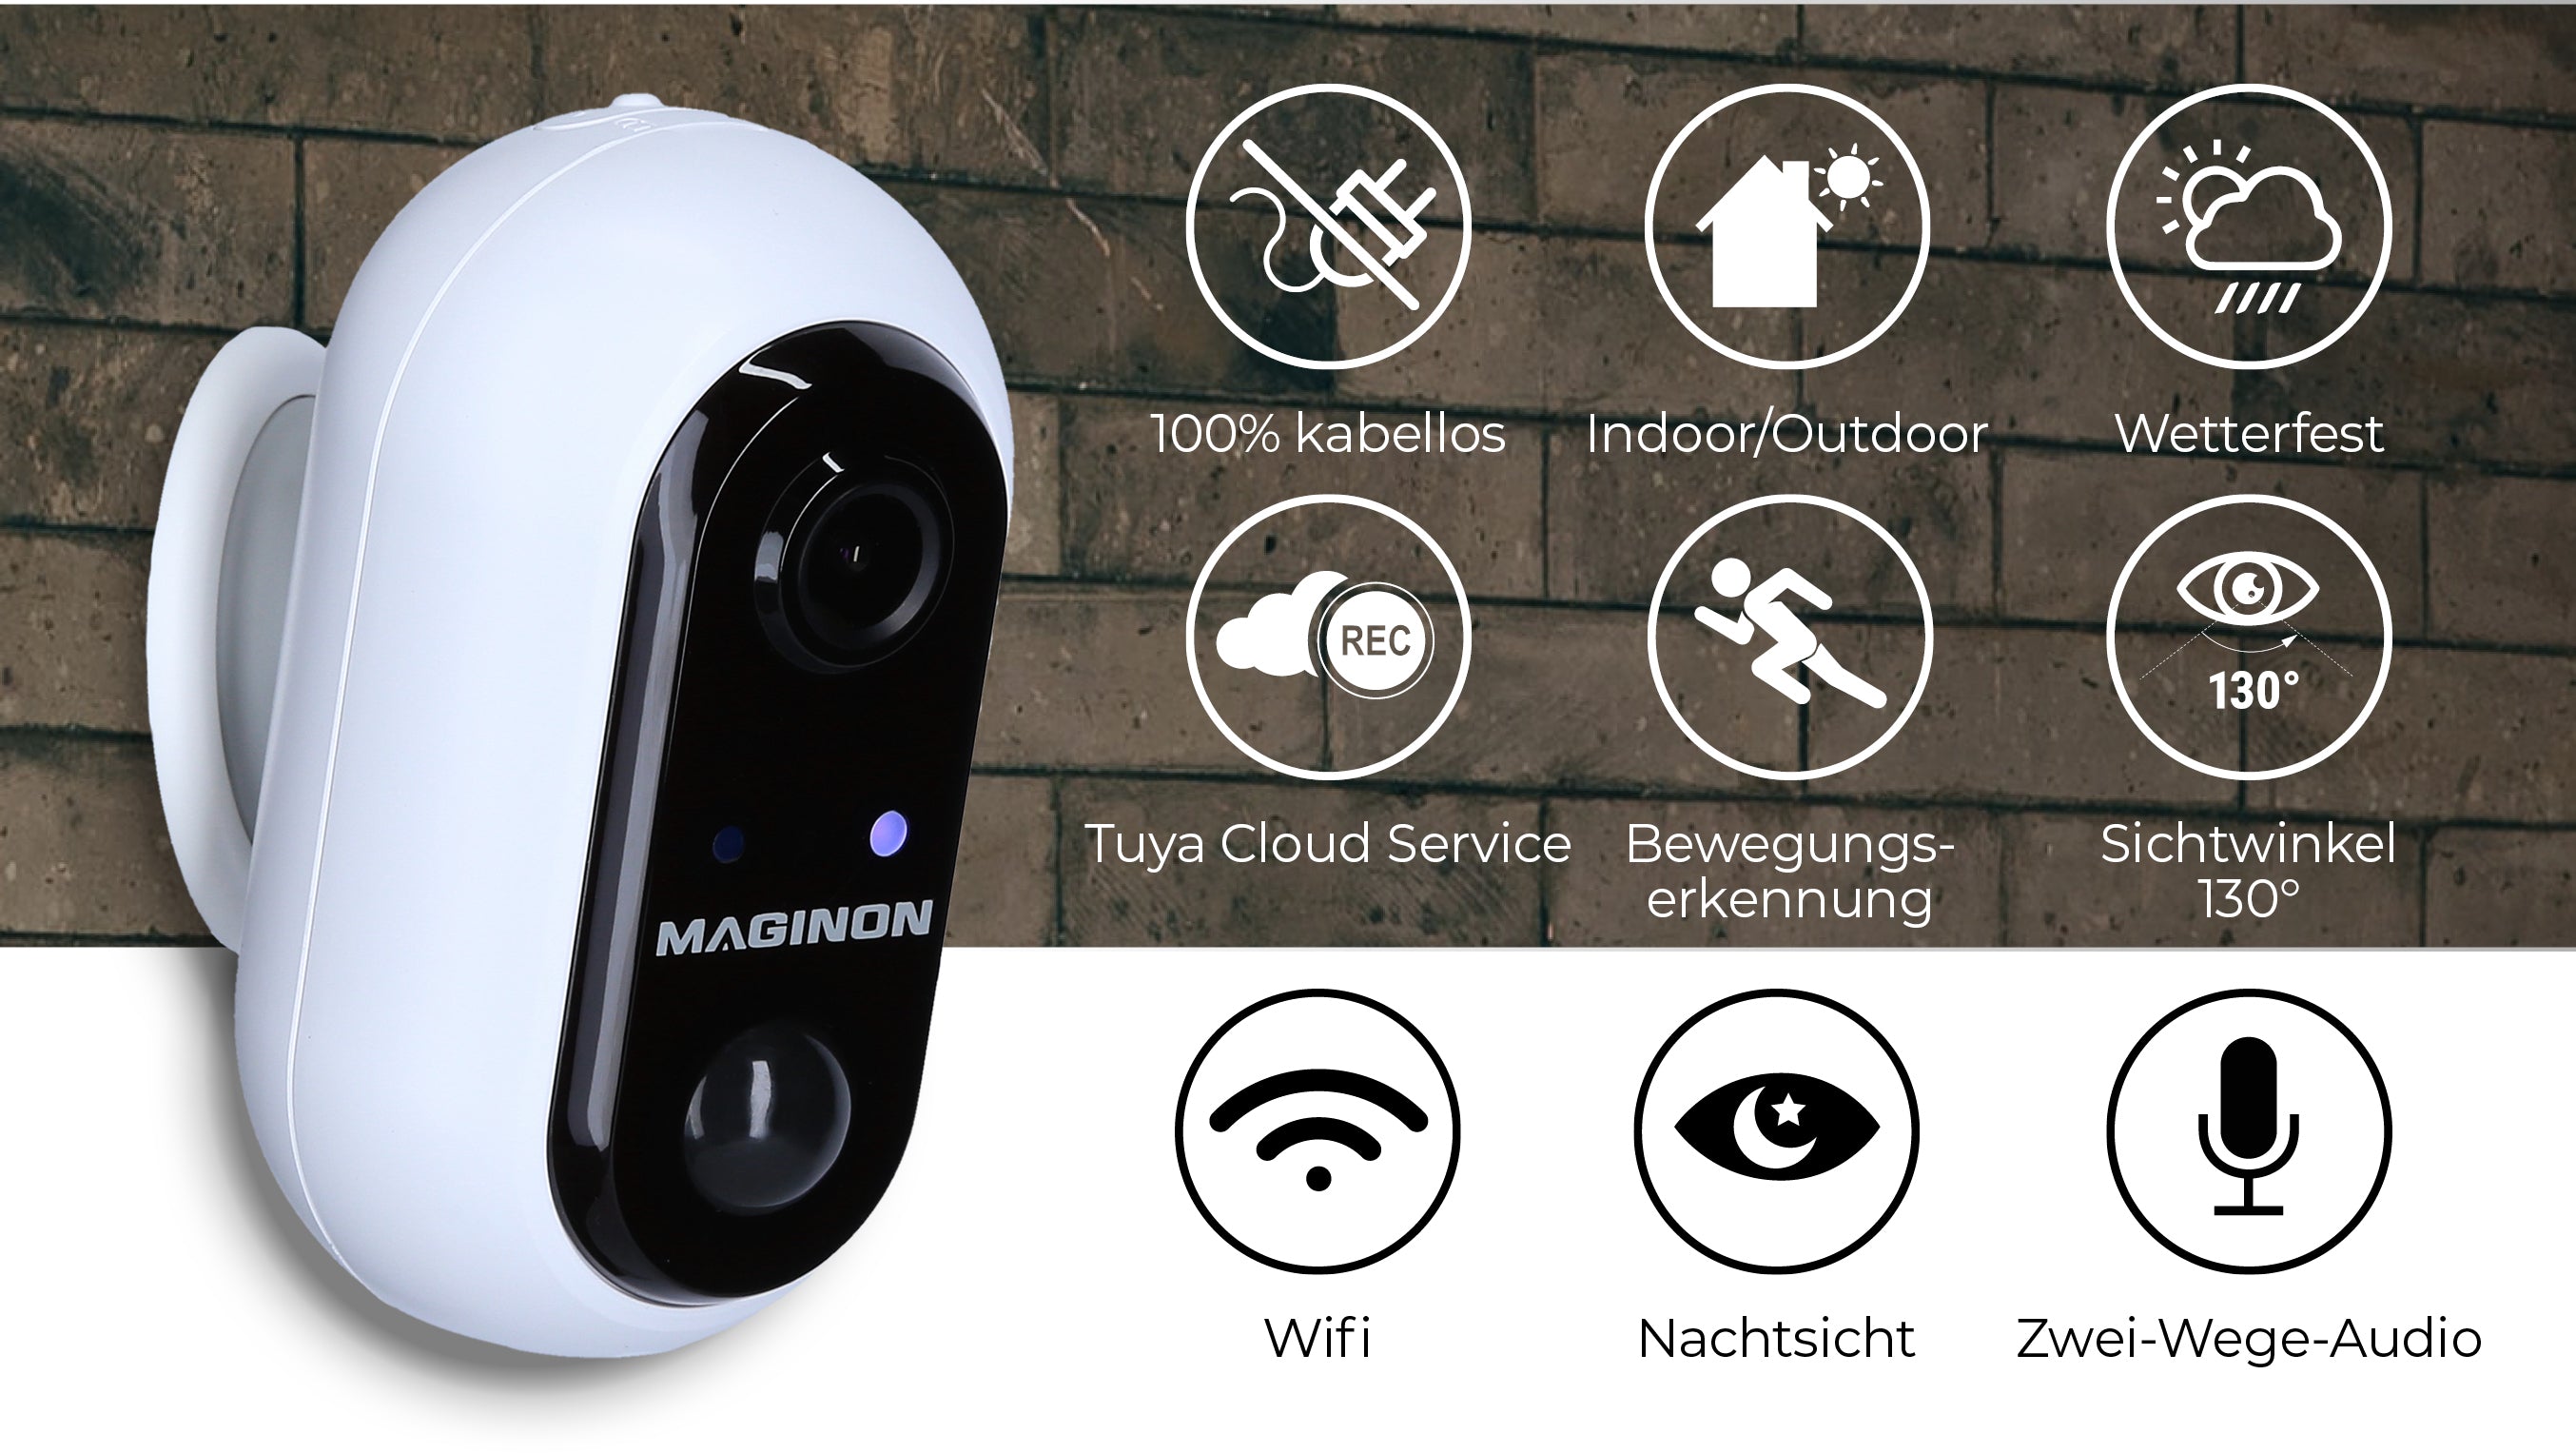 maginon wifi network camera